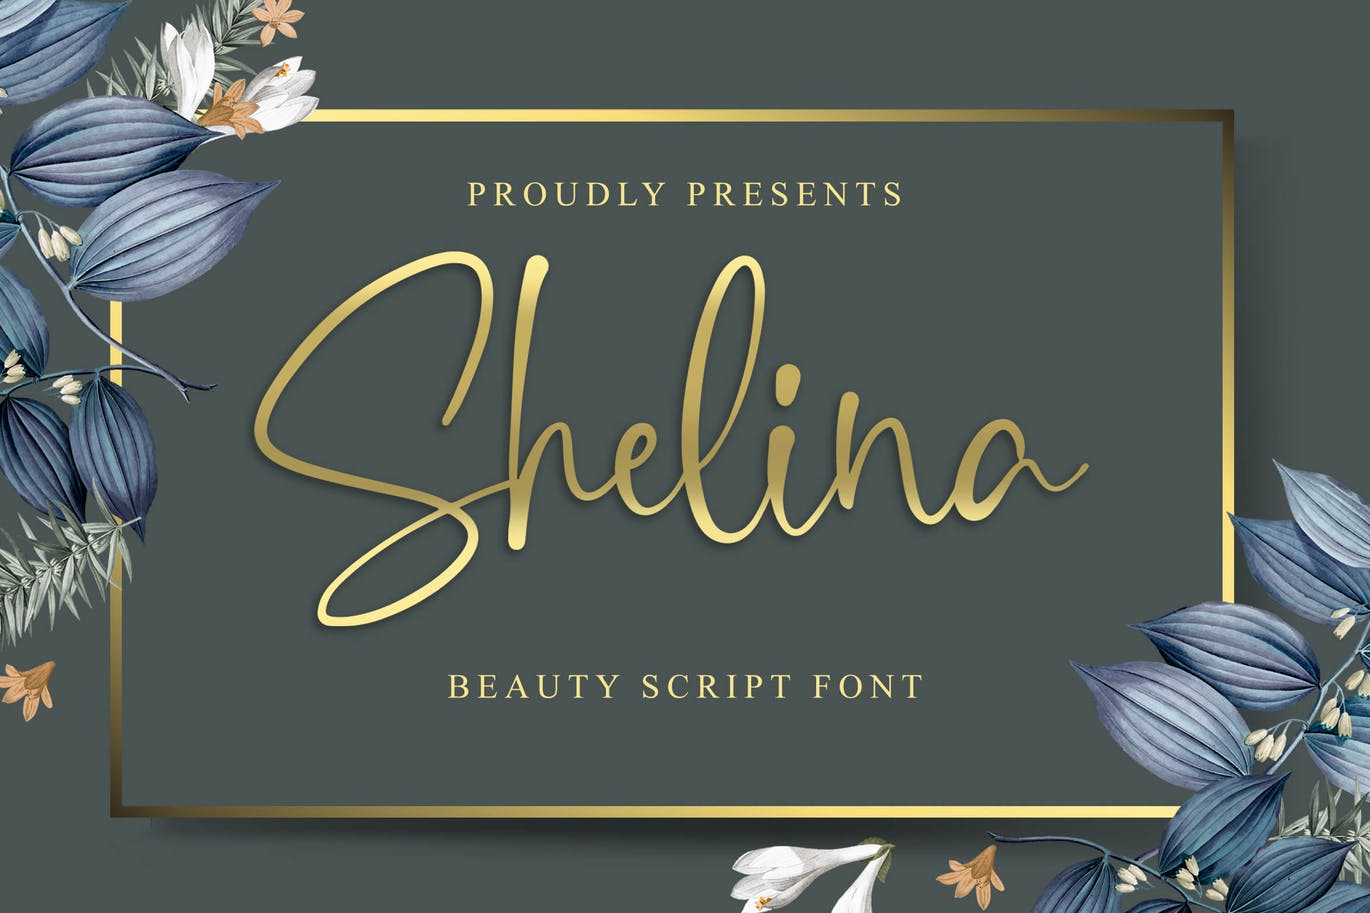 英文连笔书法字体非凡图库精选 Shelina Beauty Script Font插图